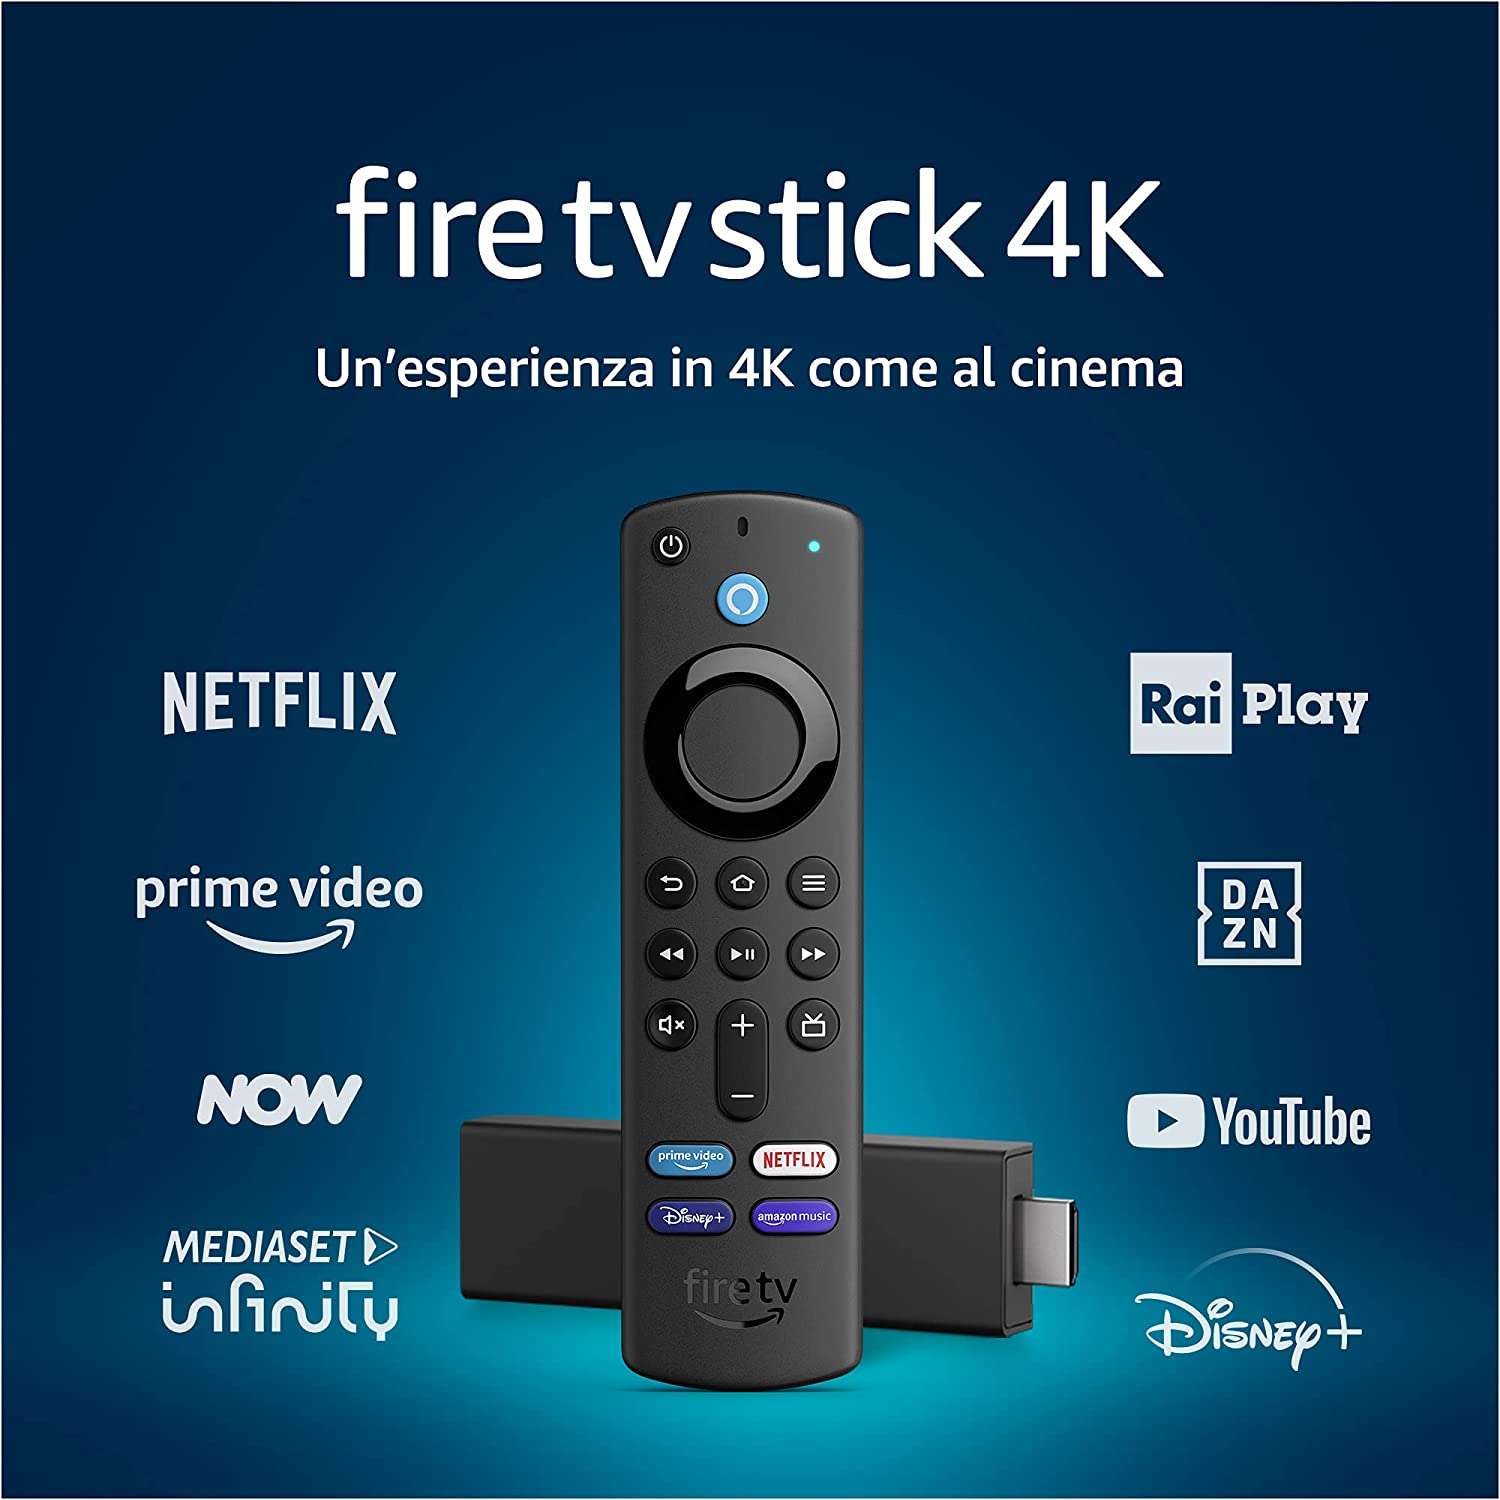 Fire TV Stick 4K offerta